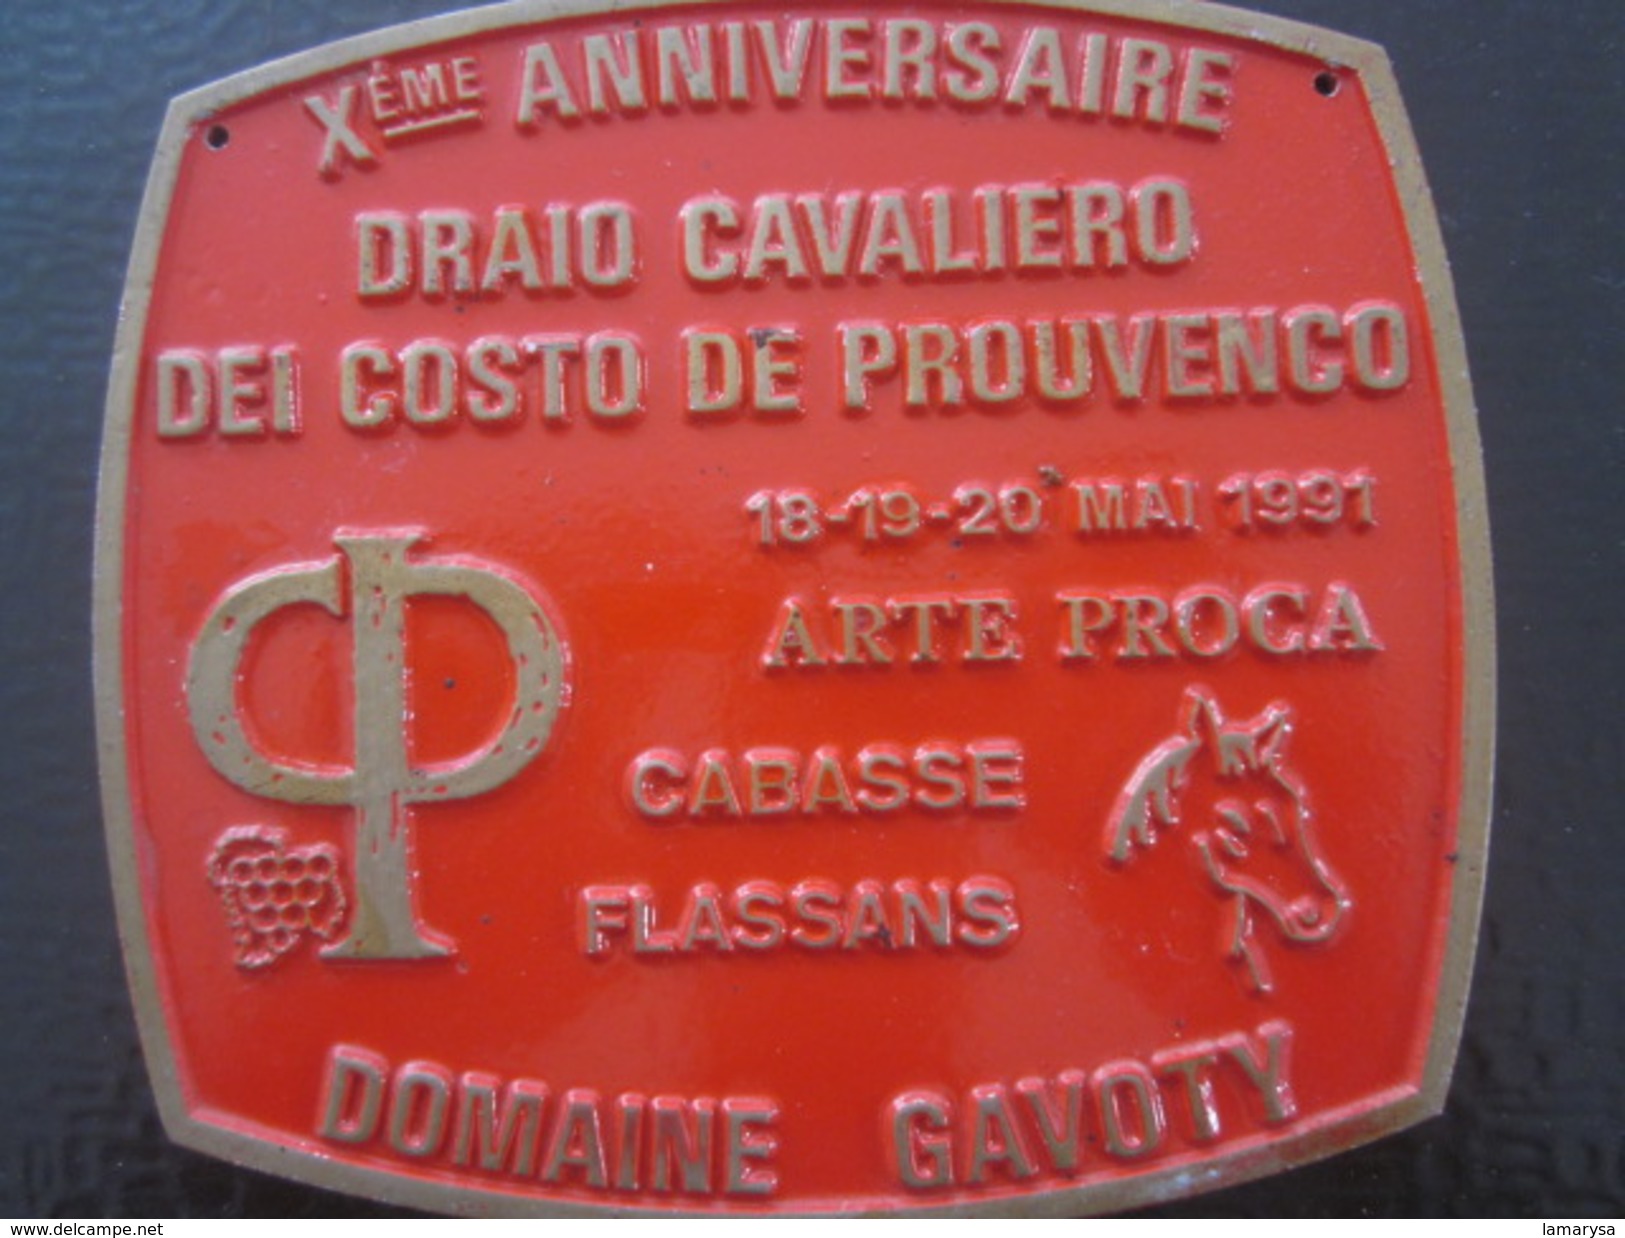 CABASSE FLASSANS Xé AN DRAIO CAVALIERO DEI COSTA DE PROUVENCO-F.F.E.-Équestre Equitation Plaque Souvenir Commémorative - Reiten